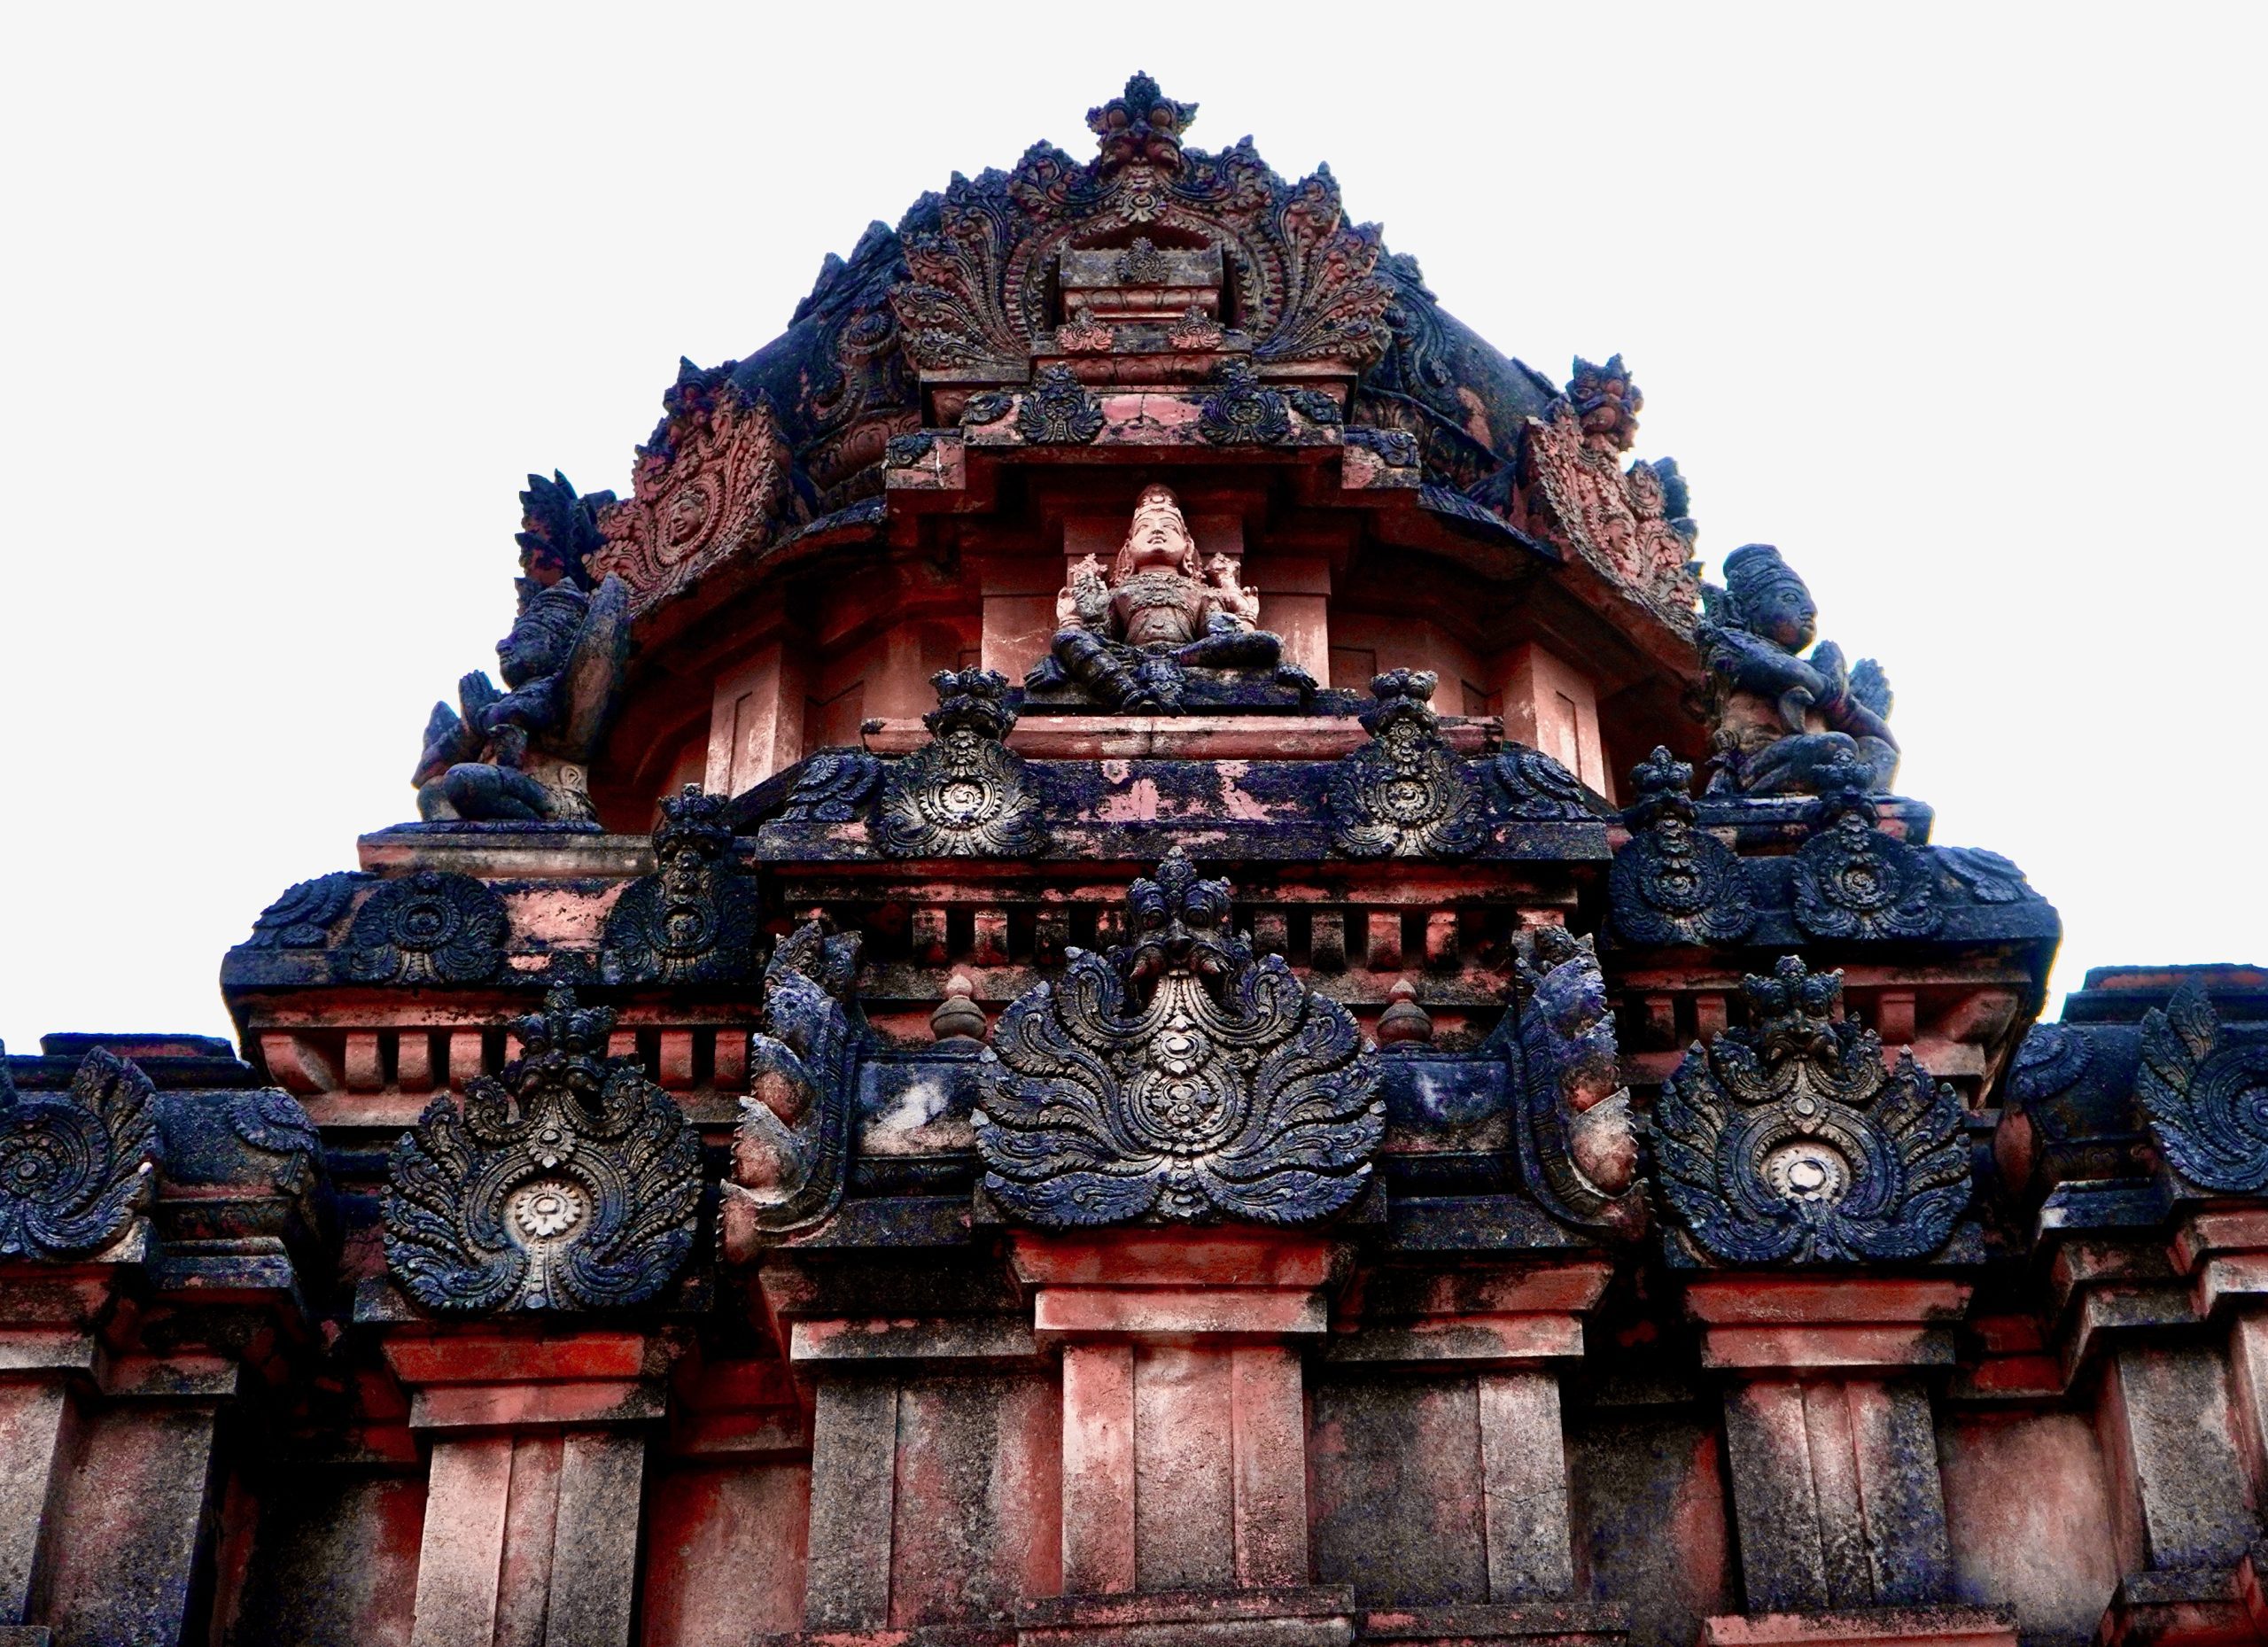 The vimana of a temple in Hampi (Manoj Arora)